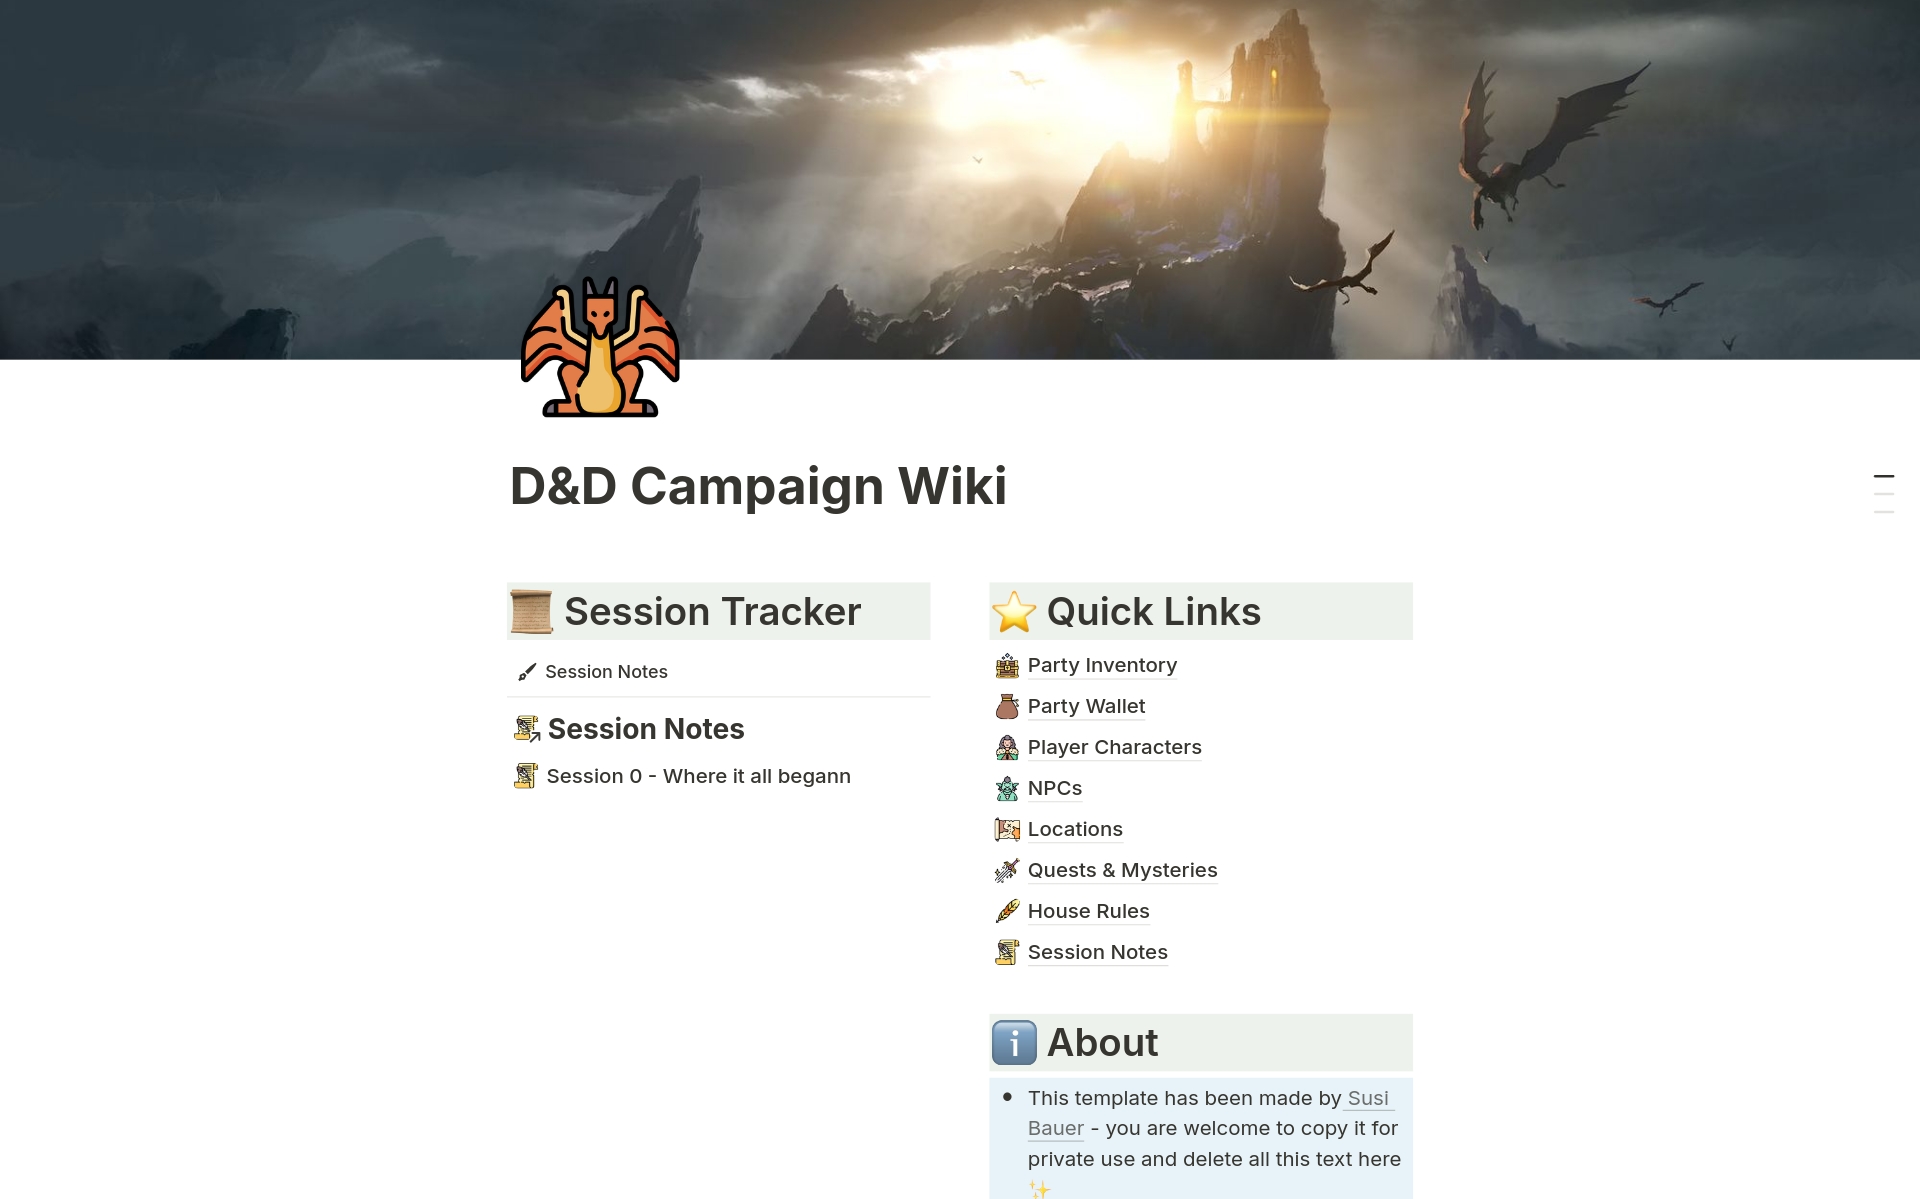 Aperçu du modèle de D&D or Roleplay Campaign Wiki